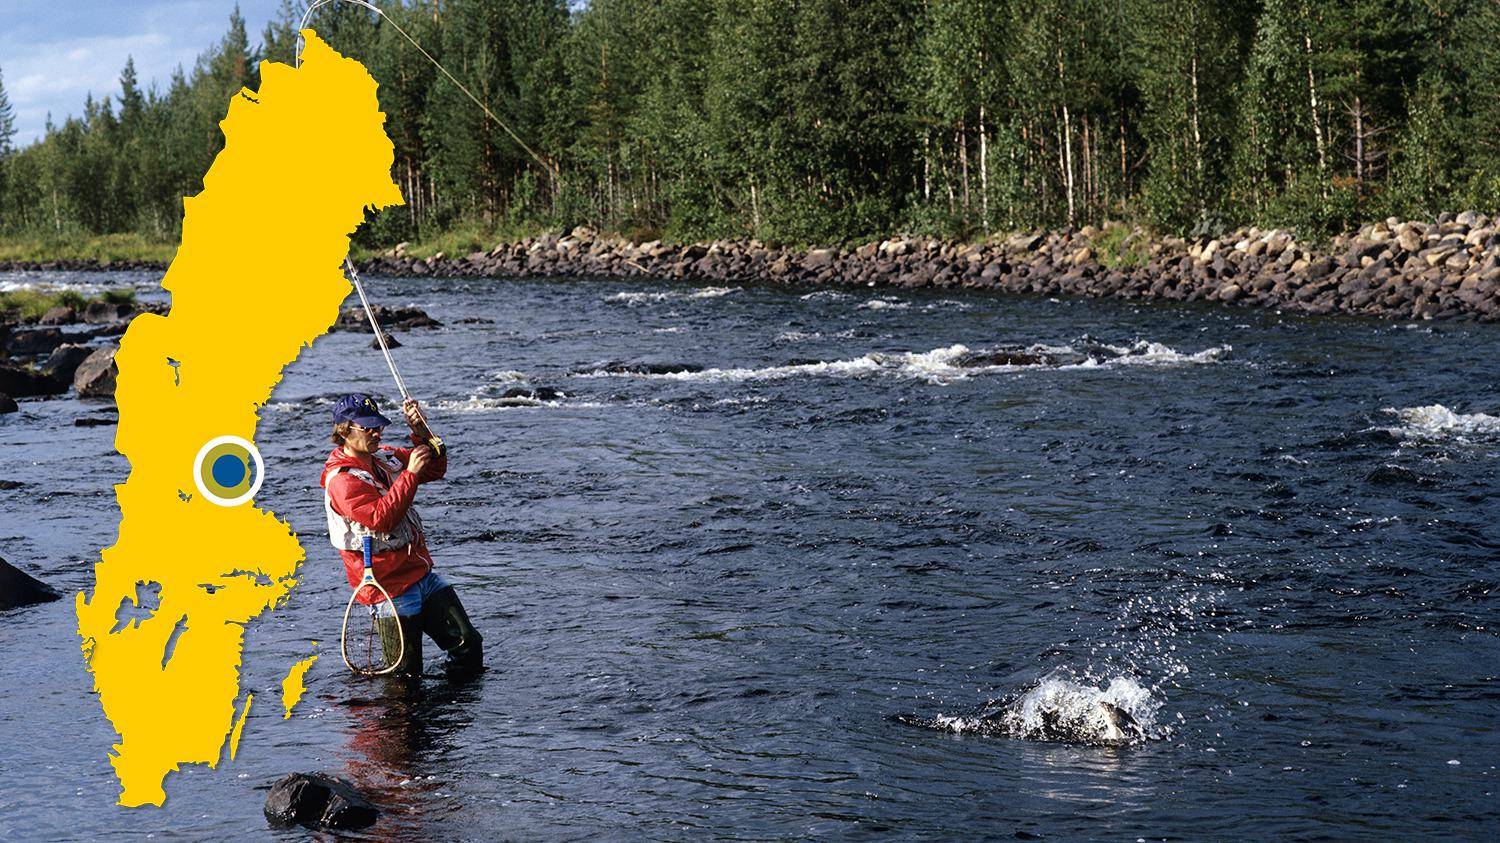 Ein Mann steht in einem Fluss zum Fliegenfischen. Er hat gerade einen Fisch gefangen und versucht, ihn einzuholen. Es gibt eine gelbe Karte von Schweden mit einem blauen Punkt, der den Standort von Voxnan markiert.